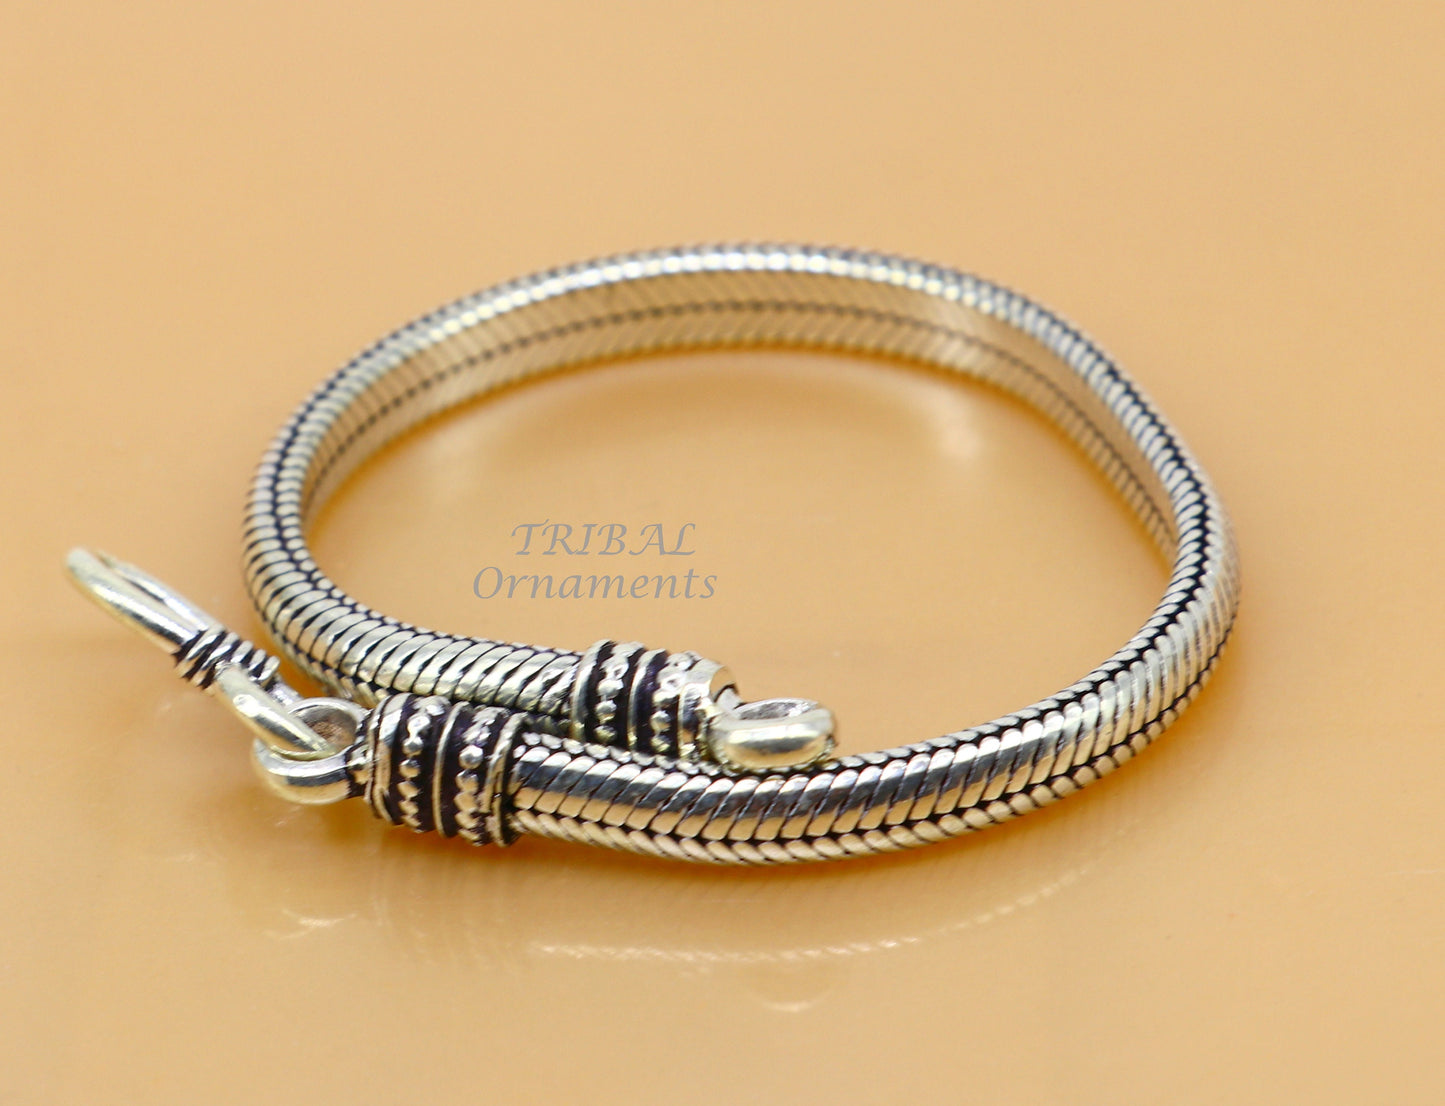 5mm 925 sterling silver handmade snake chain bracelet D shape Customized bracelet half round snake chain bracelet unisex sbr378 - TRIBAL ORNAMENTS